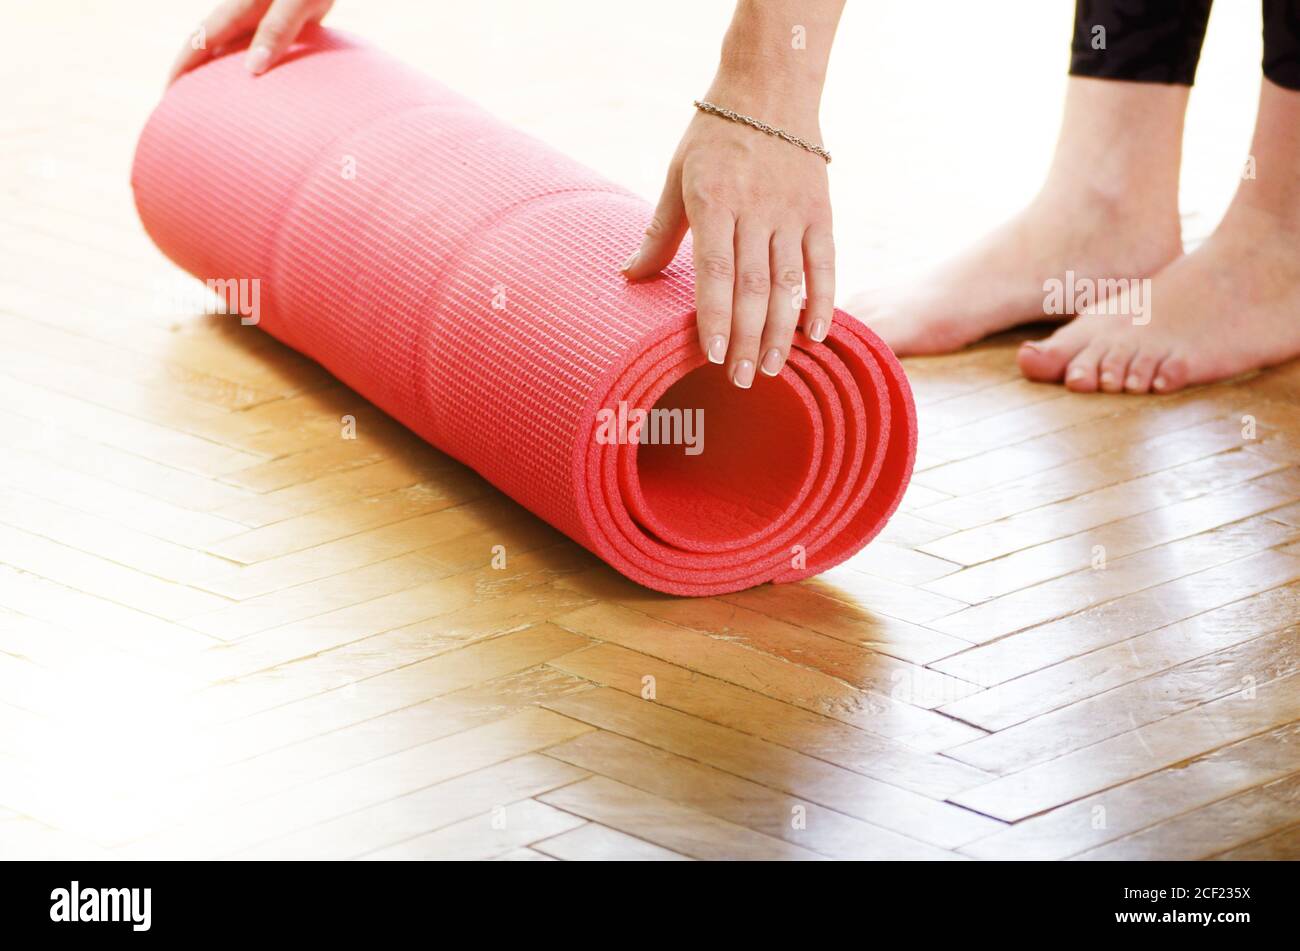 Le mani femminili srotolano il tappetino yoga prima dell'allenamento. Concetto di stile di vita sano. Foto Stock